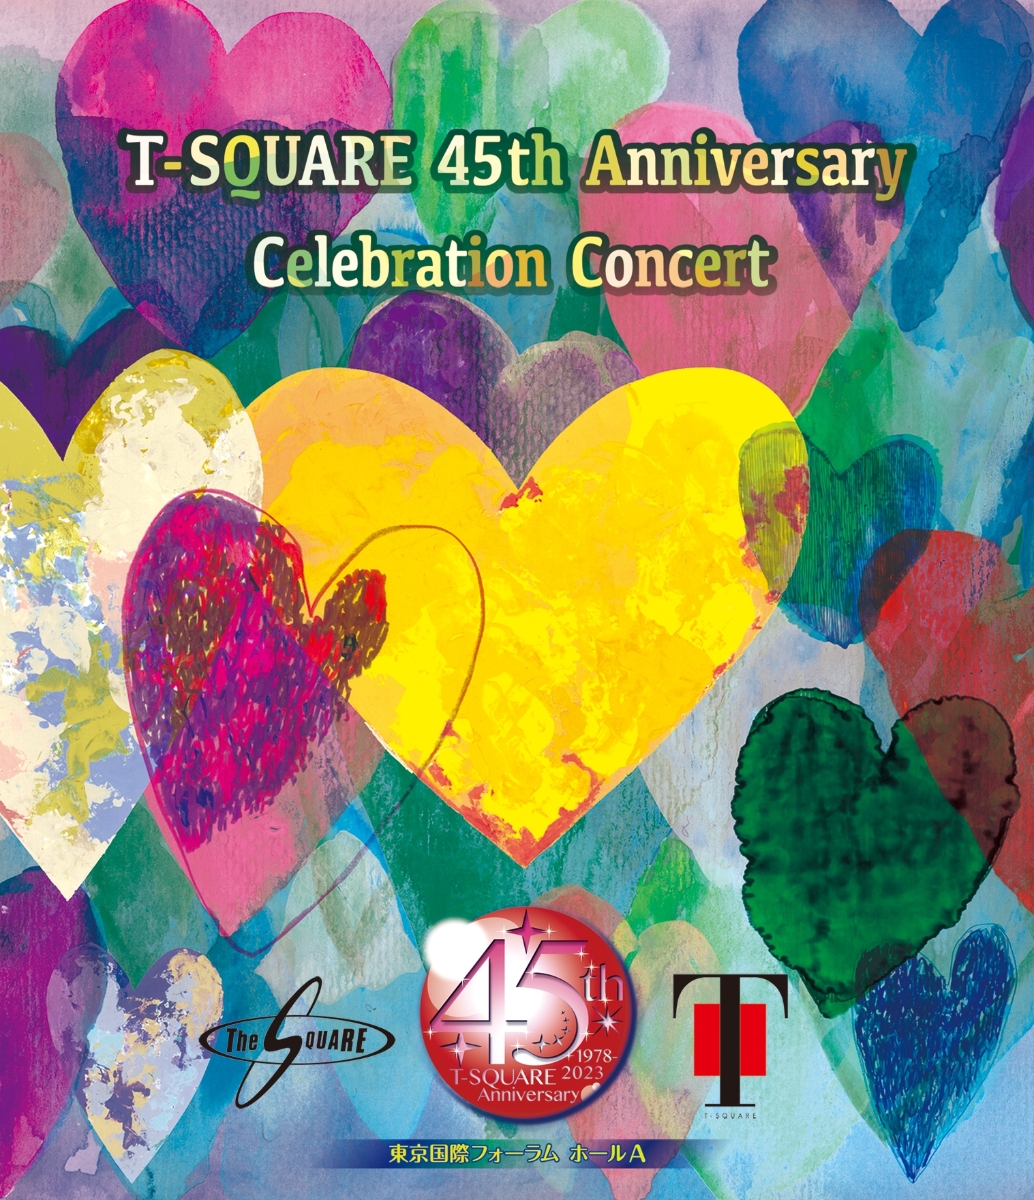 楽天ブックス: T-SQUARE 45th Anniversary Celebration Concert【Blu 